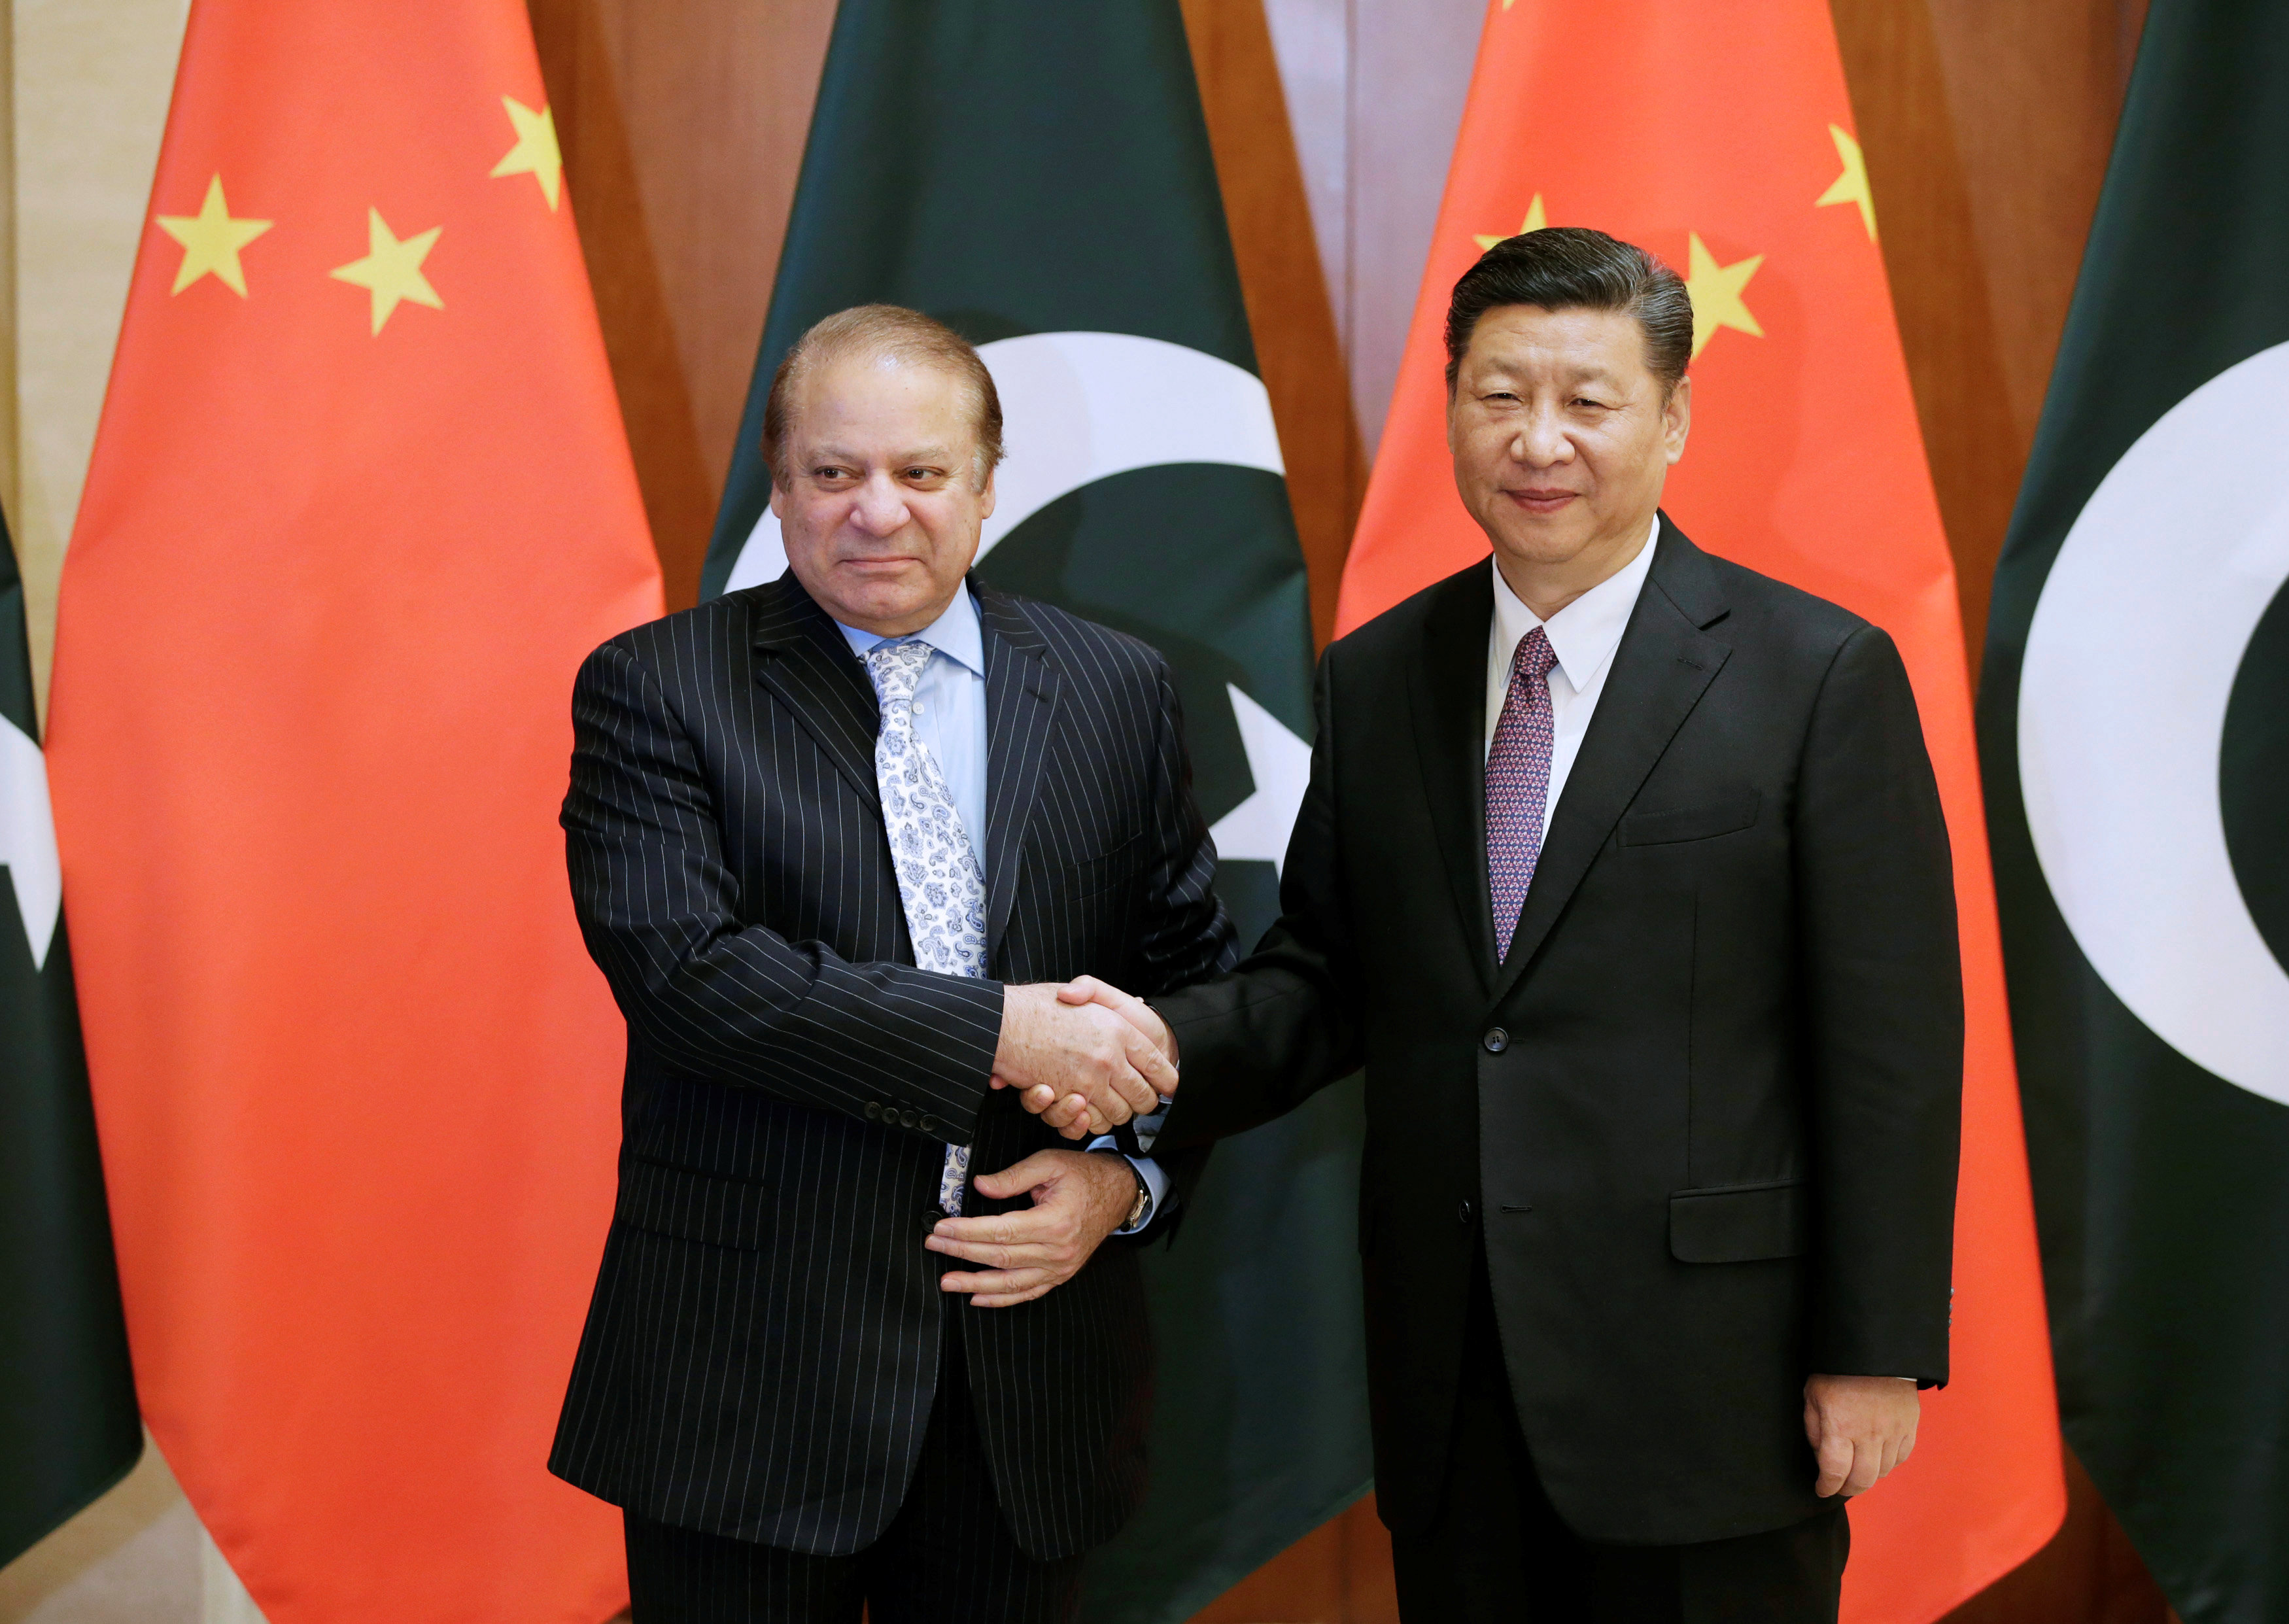 الرئيس الصينى يستقبل رئيس الوزراء الباكستانى بمنتدى الطريق والحزام